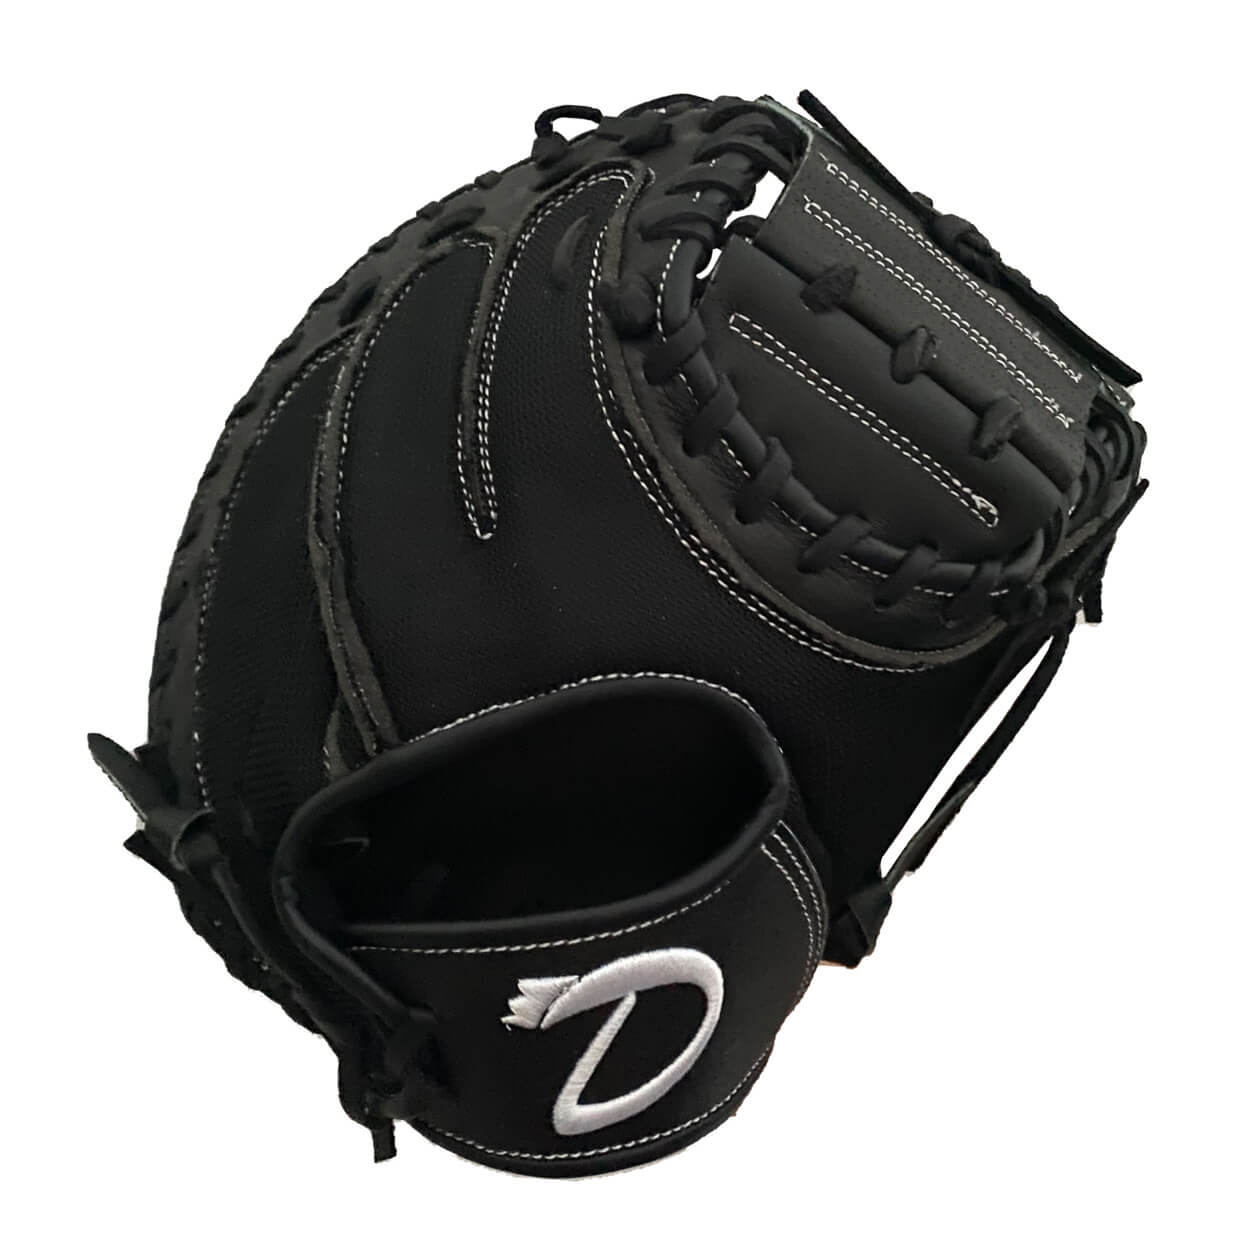 Play-ball 32” Black Baseball Catcher's Mitt - Hot Hitters | Baseball & Softball Shop - baseball softball shop online europe shipping 